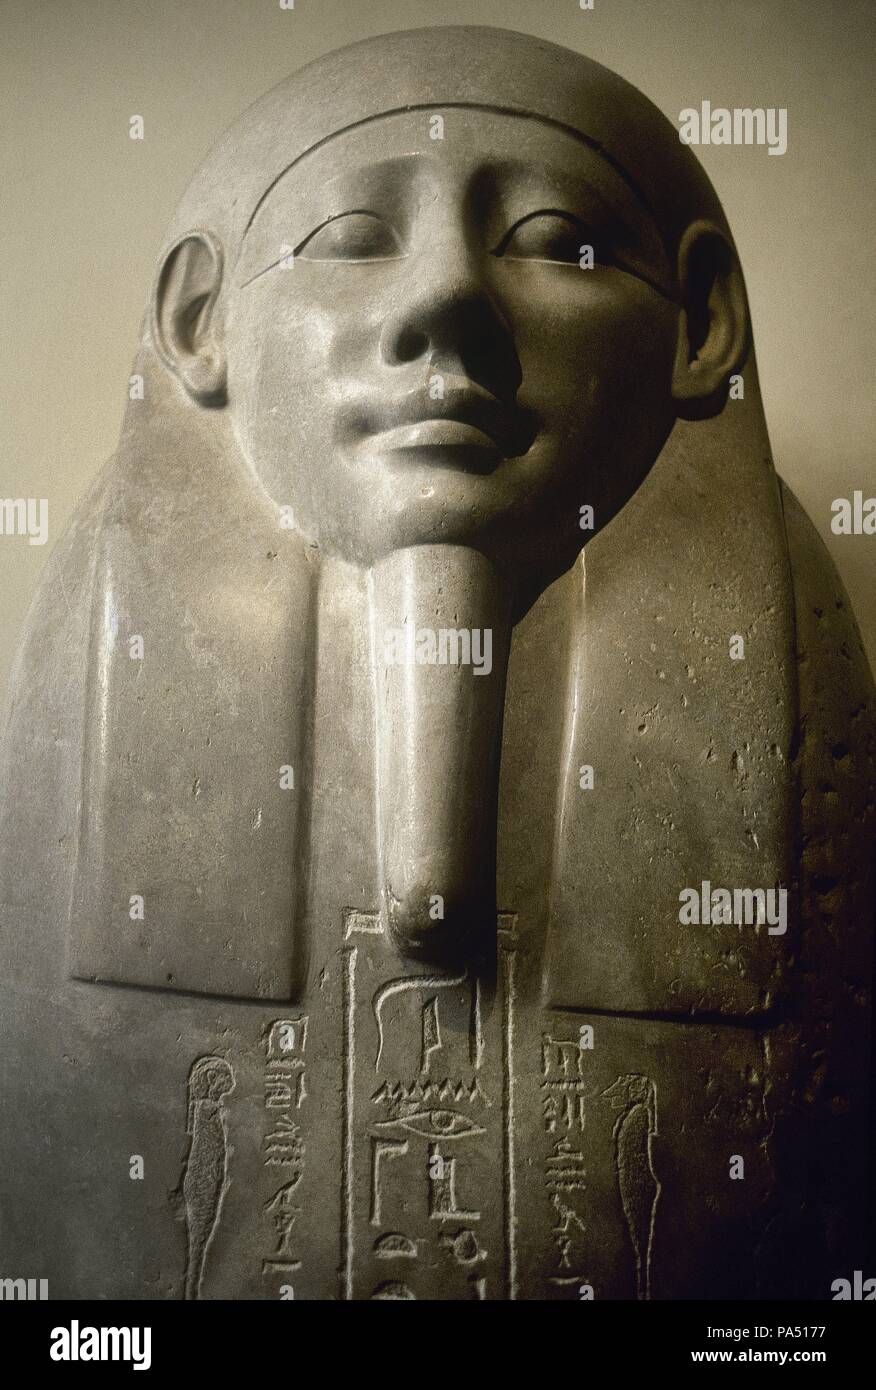 Arte Egipcio. Sarcofago del sacerdote Sema Tawy (siglo IV a. C.) realizado en basalto. Museo Gregoriano egipcio, Museos Vaticanos. Foto de stock